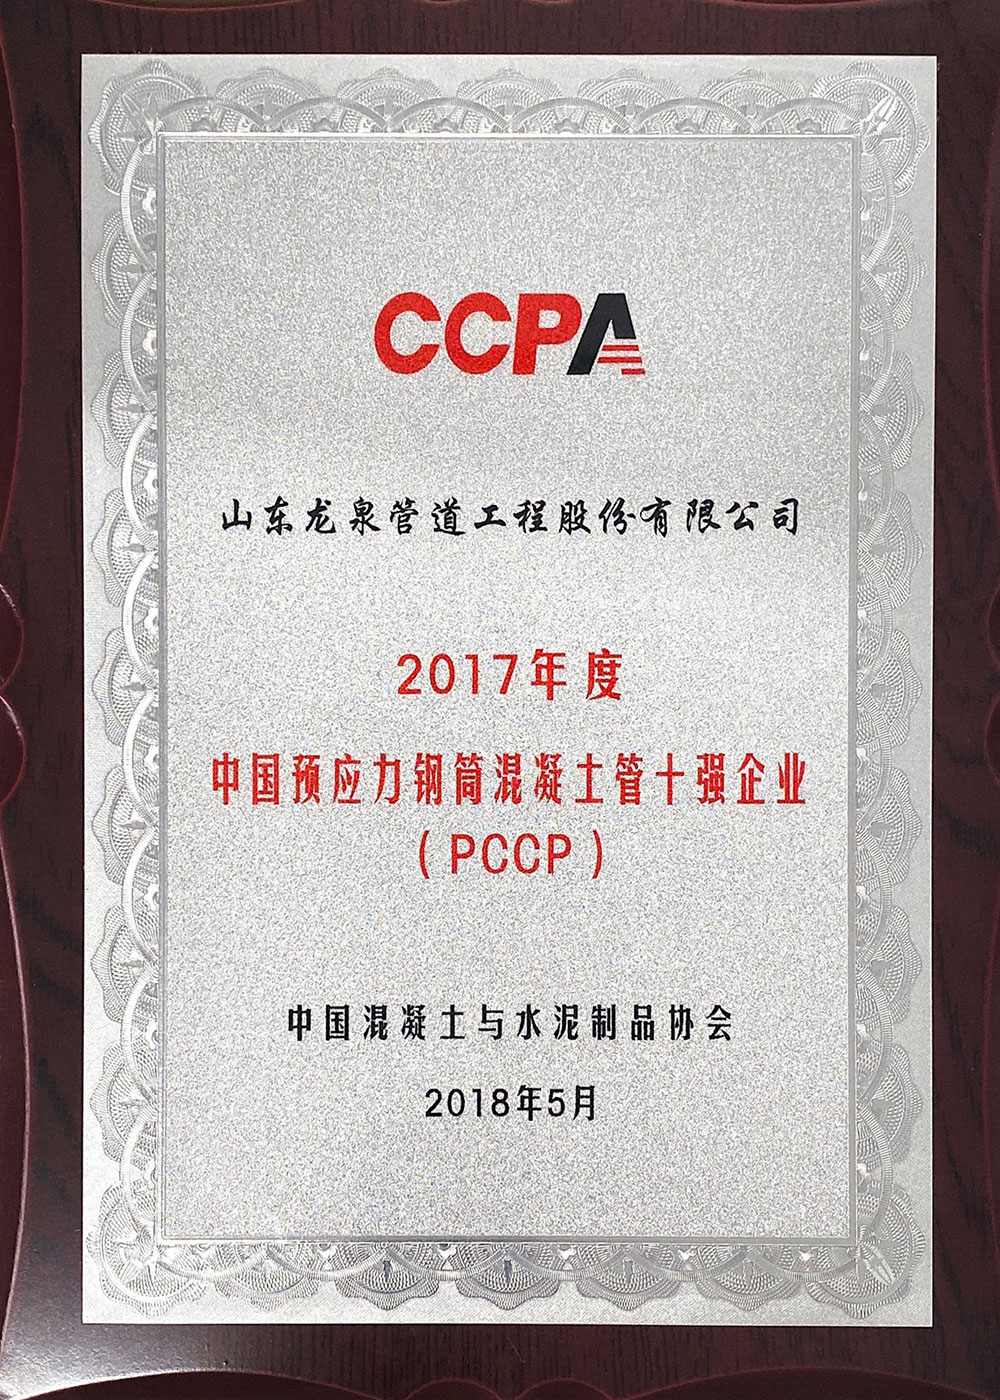 المؤسسة العشرة الأوائل الصينية للأنابيب الخرسانية بالأسطوانة الفولاذية المسبقة الإجهاد بسنة 2017  (PCCP)